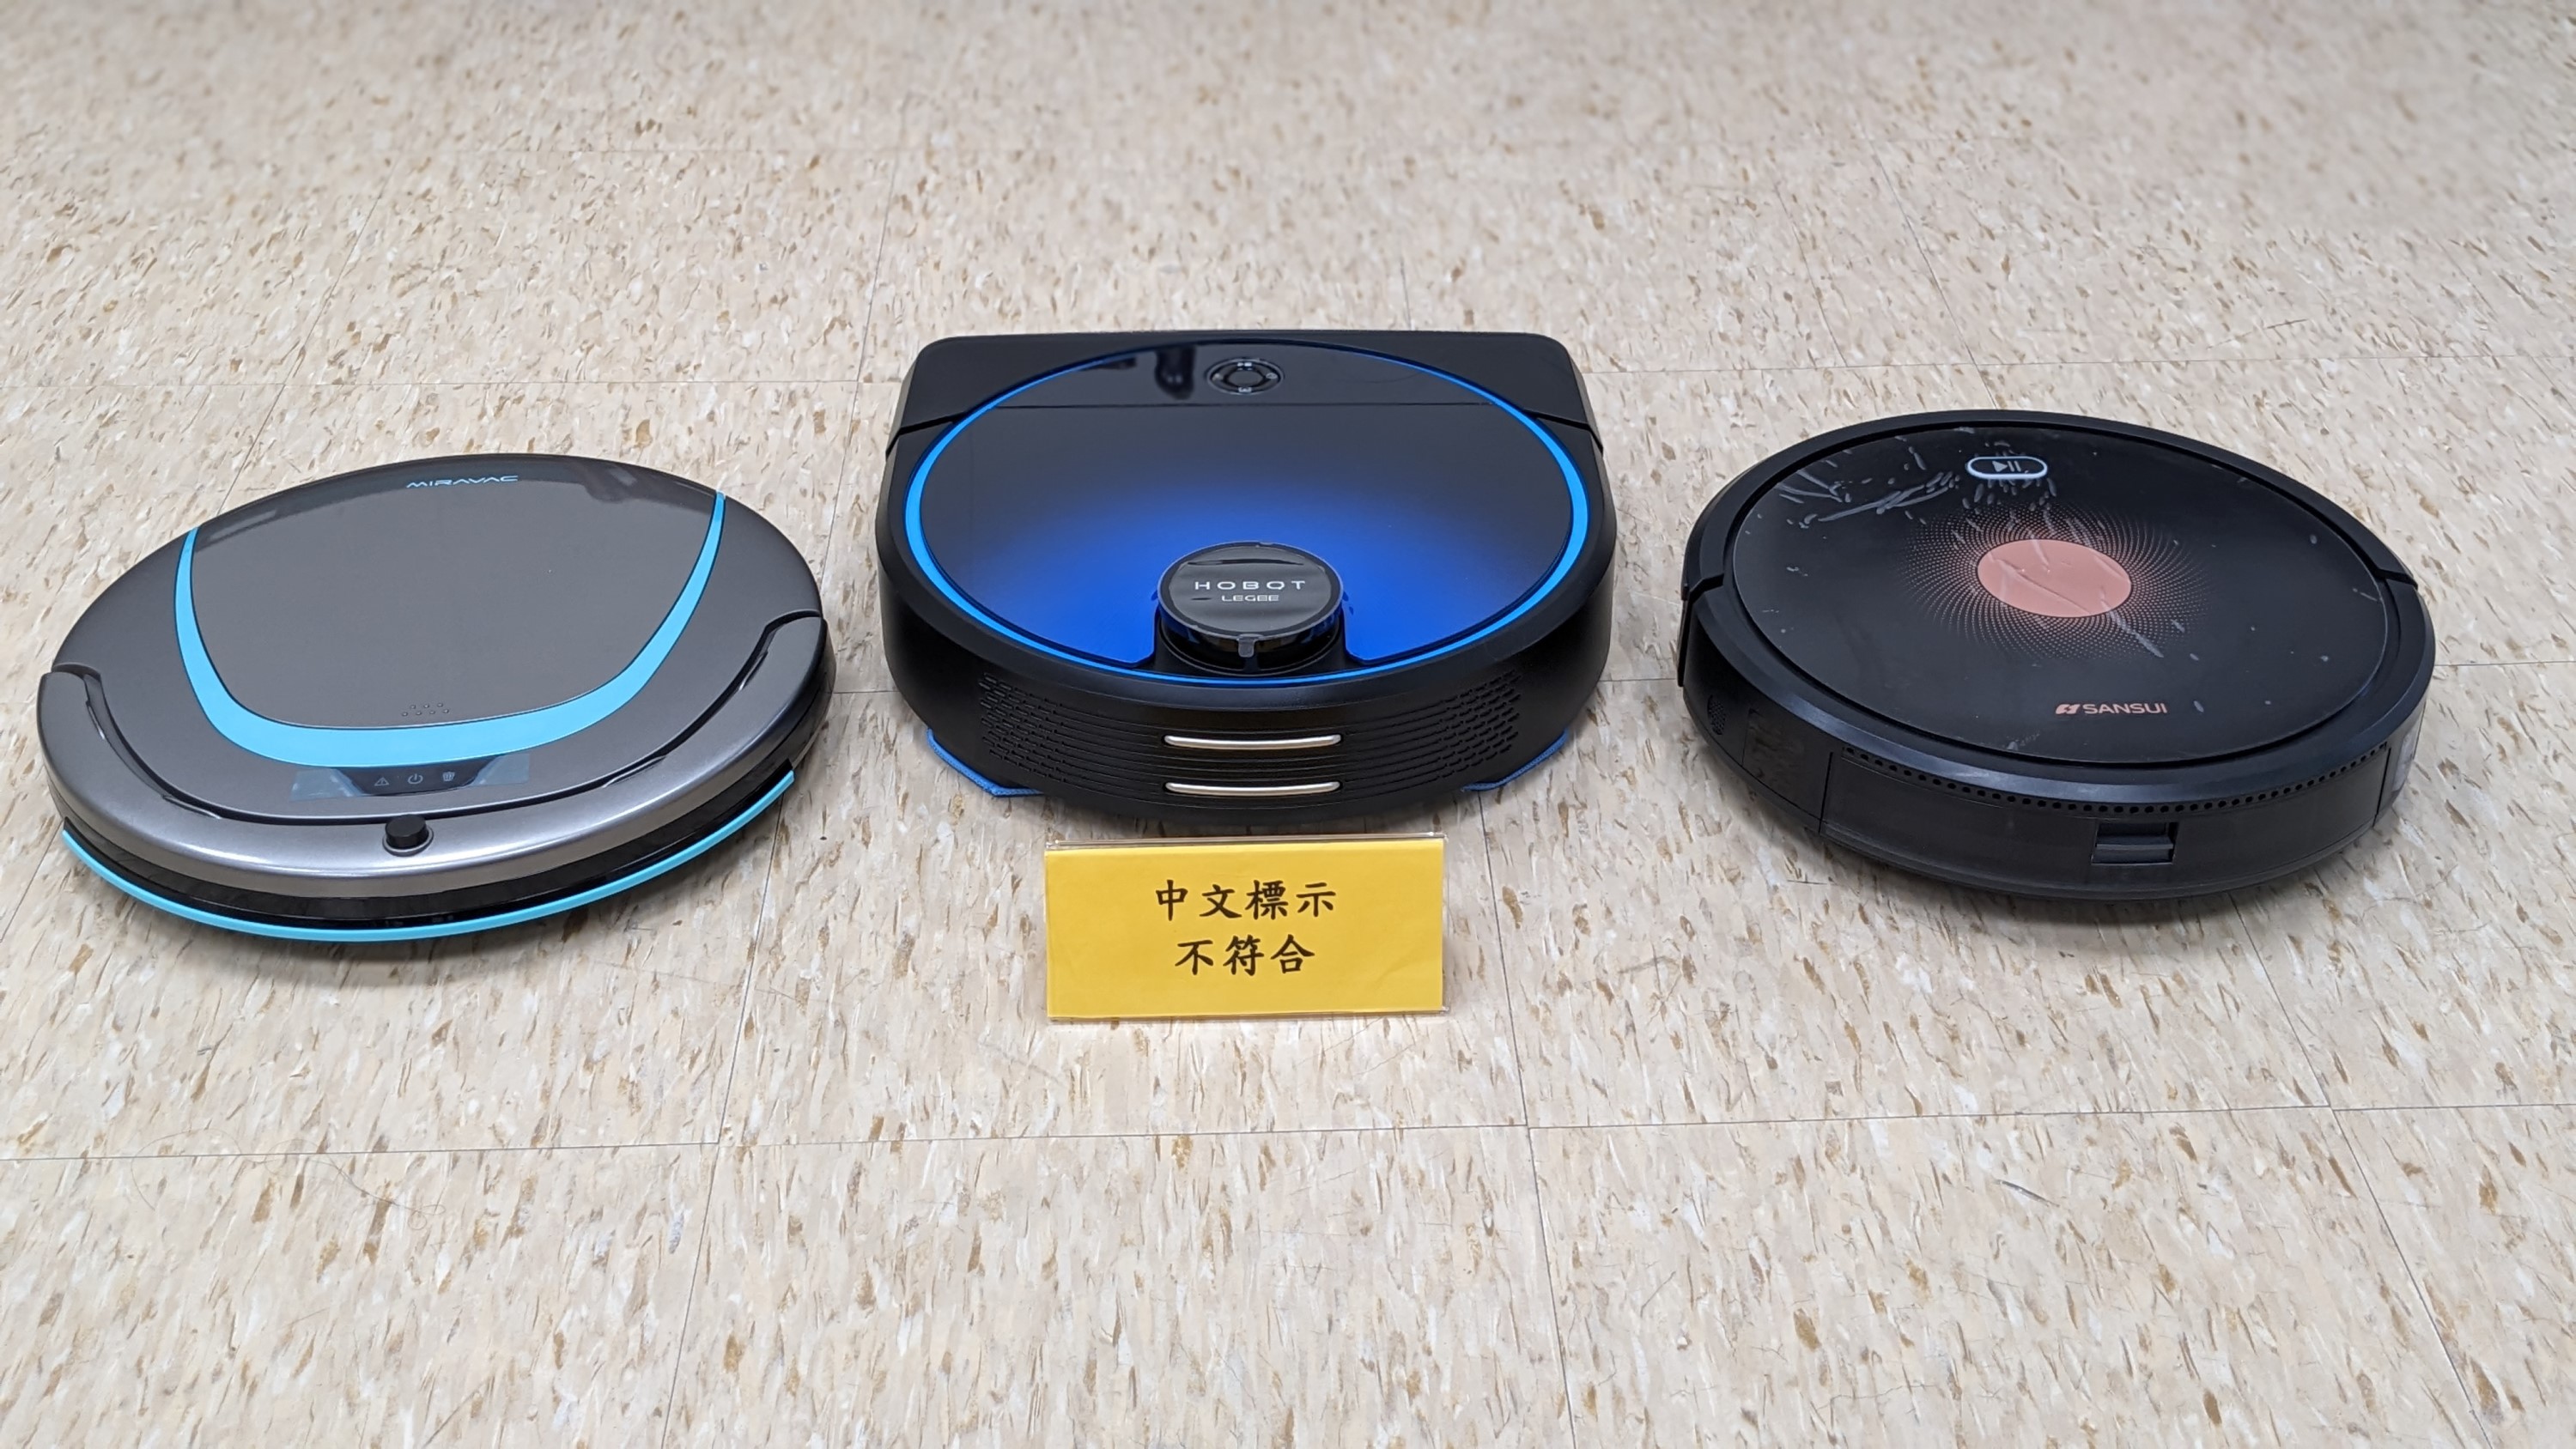 經濟部標準檢驗局與財團法人中華民國消費者文教基金會共同公布市售「掃地機器人」檢測結果